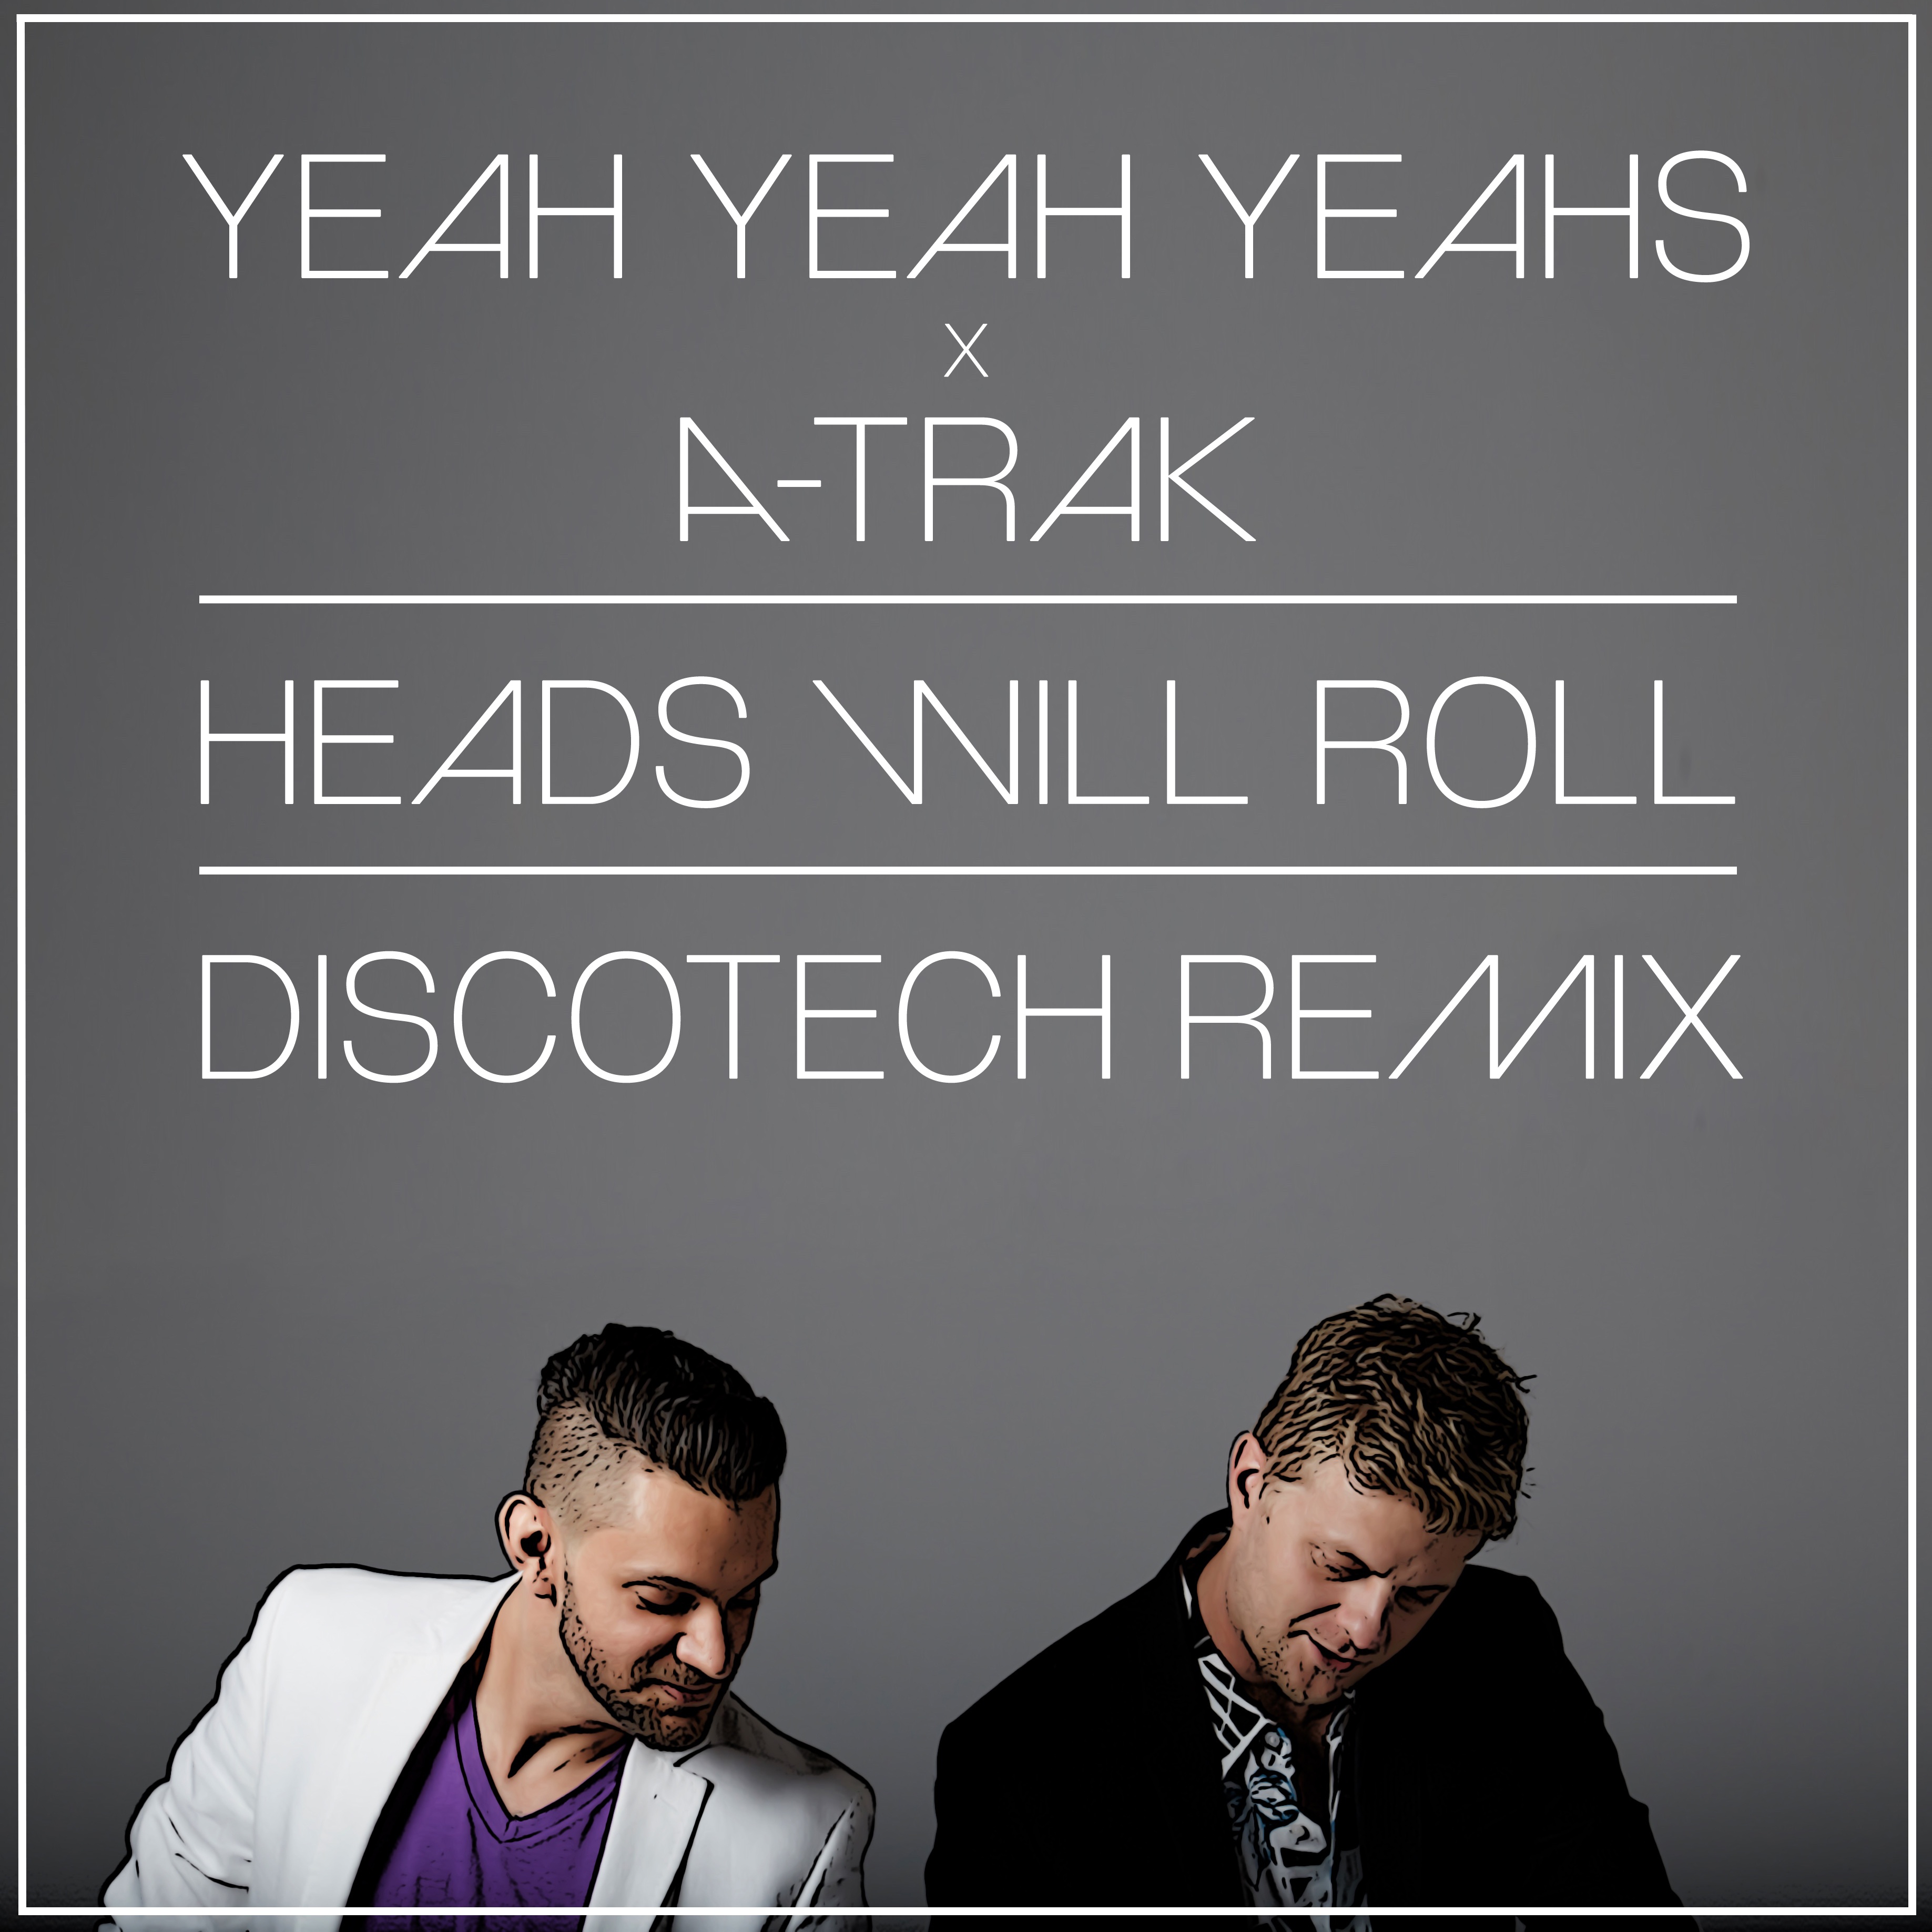 Heads Will Roll [DiscoTech Remix]